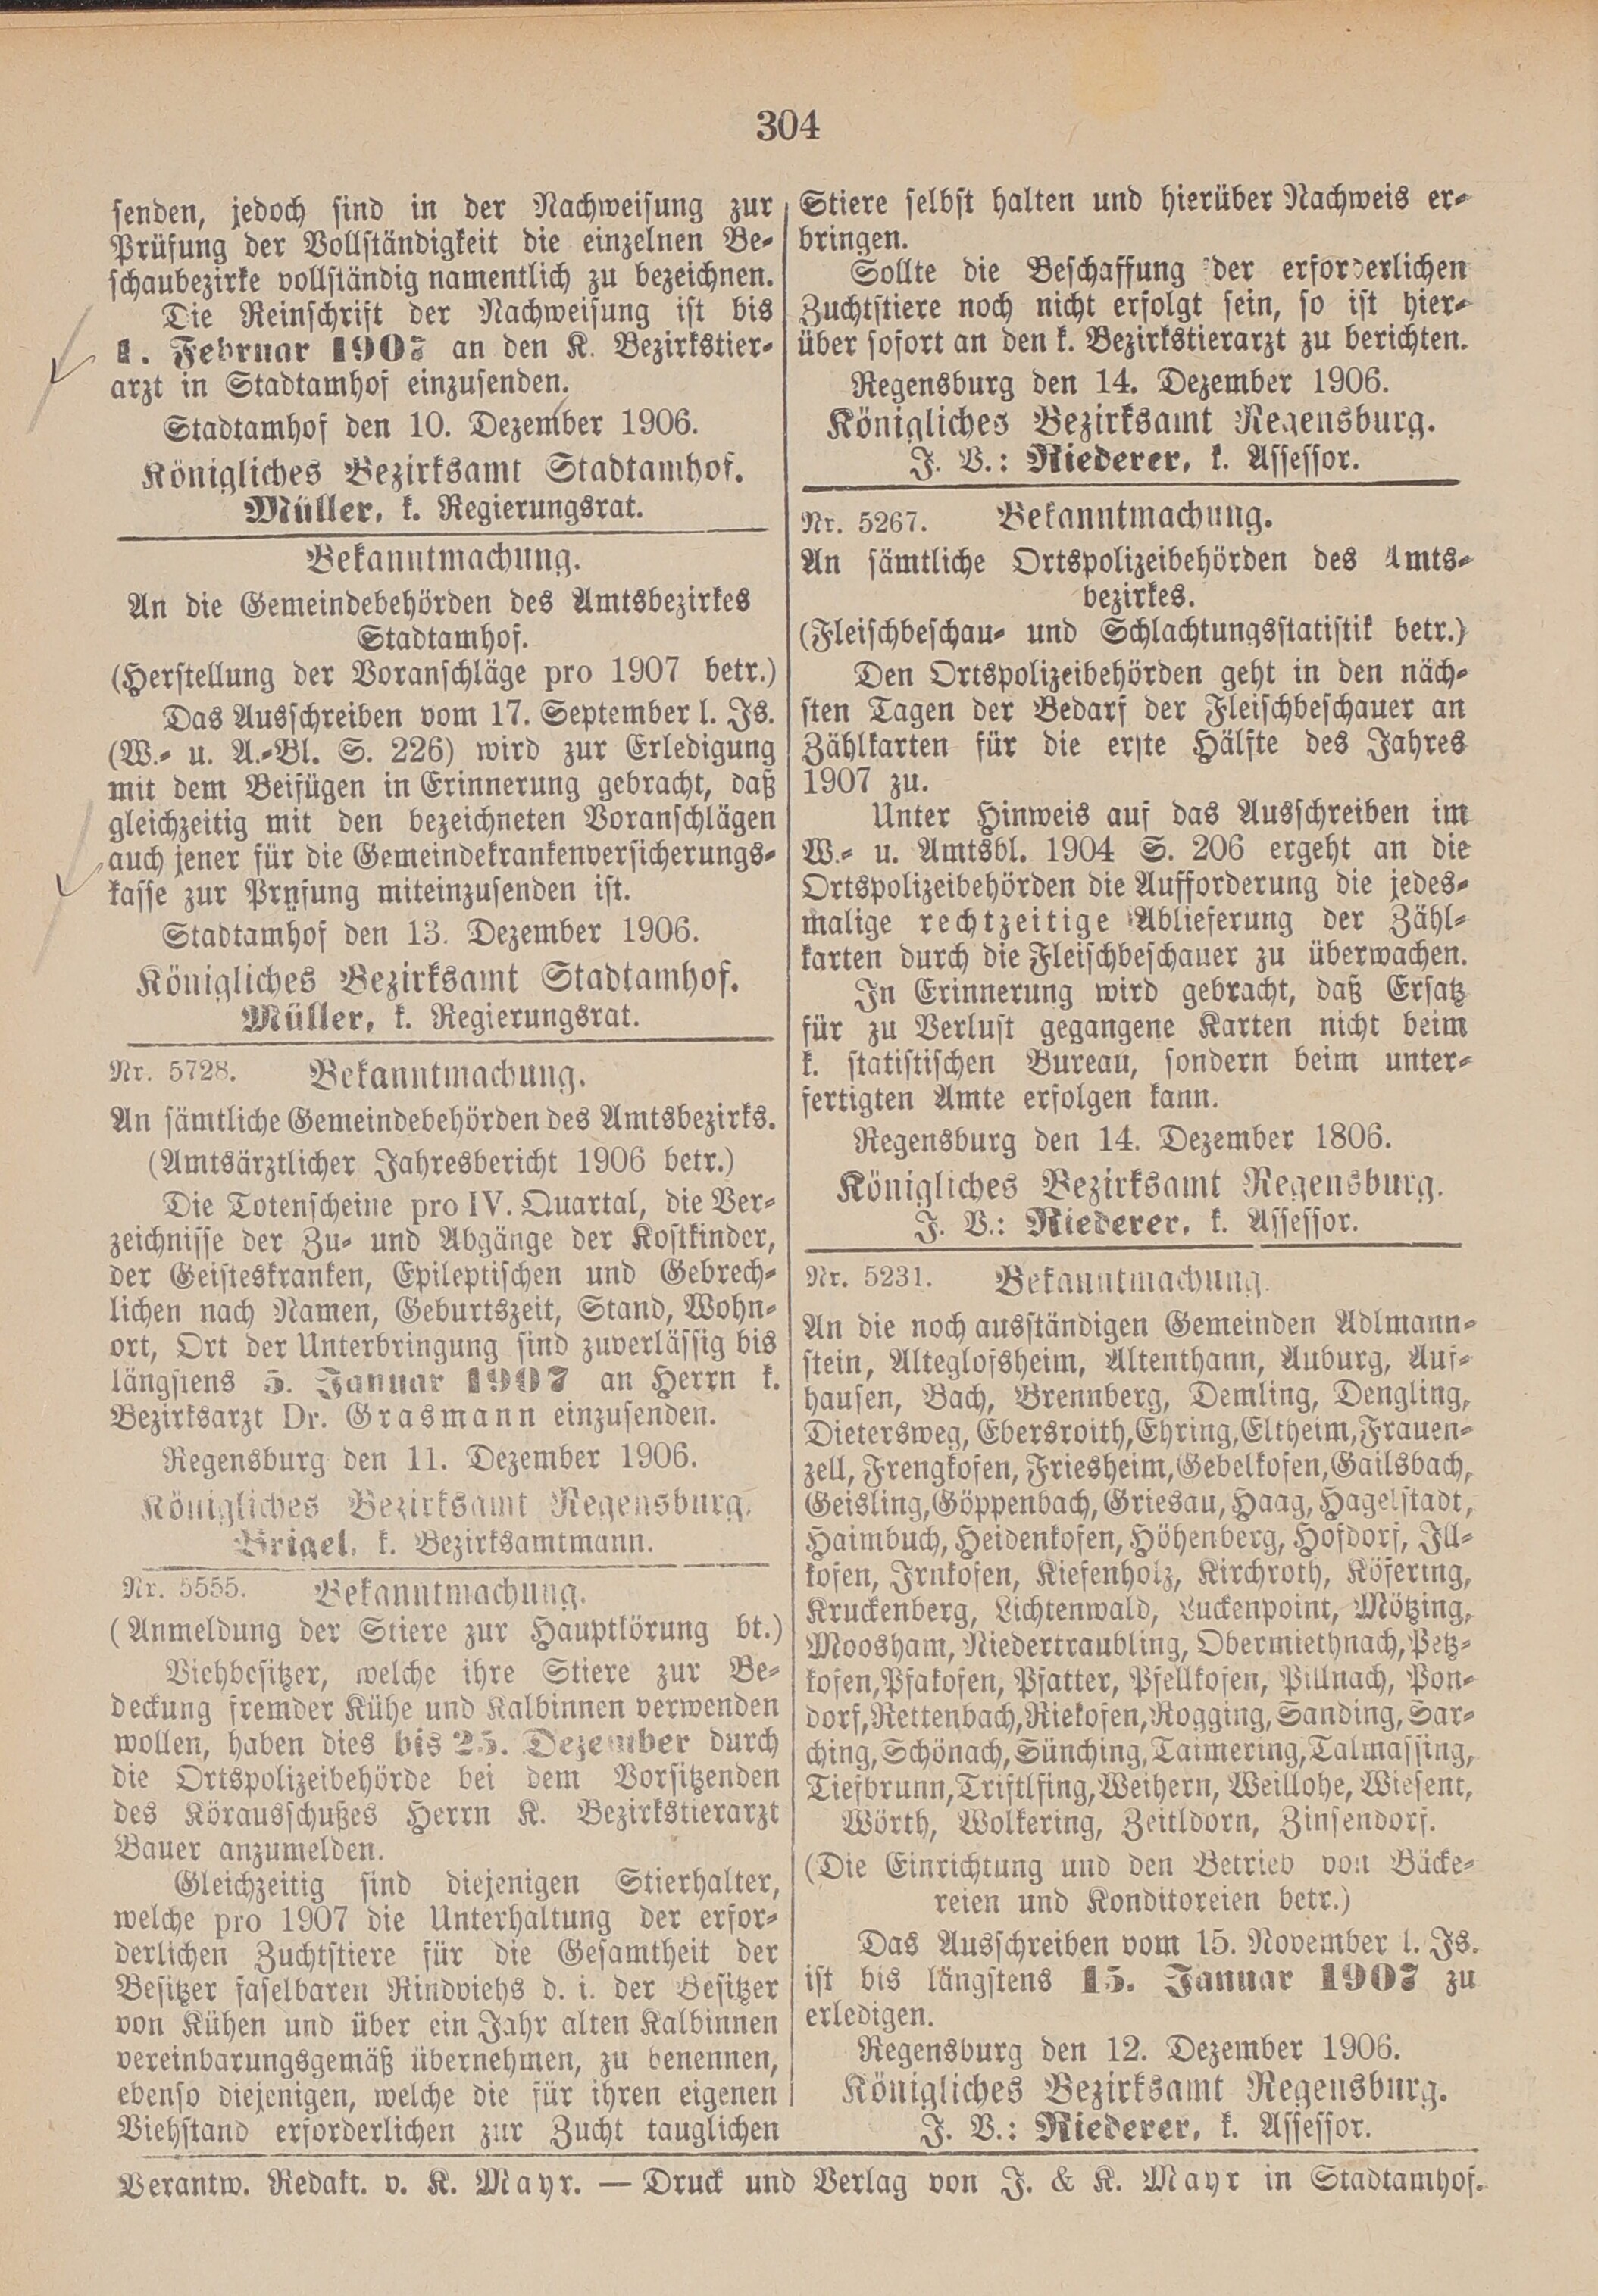 8. amtsblatt-stadtamhof-regensburg-1906-12-16-n50_3190